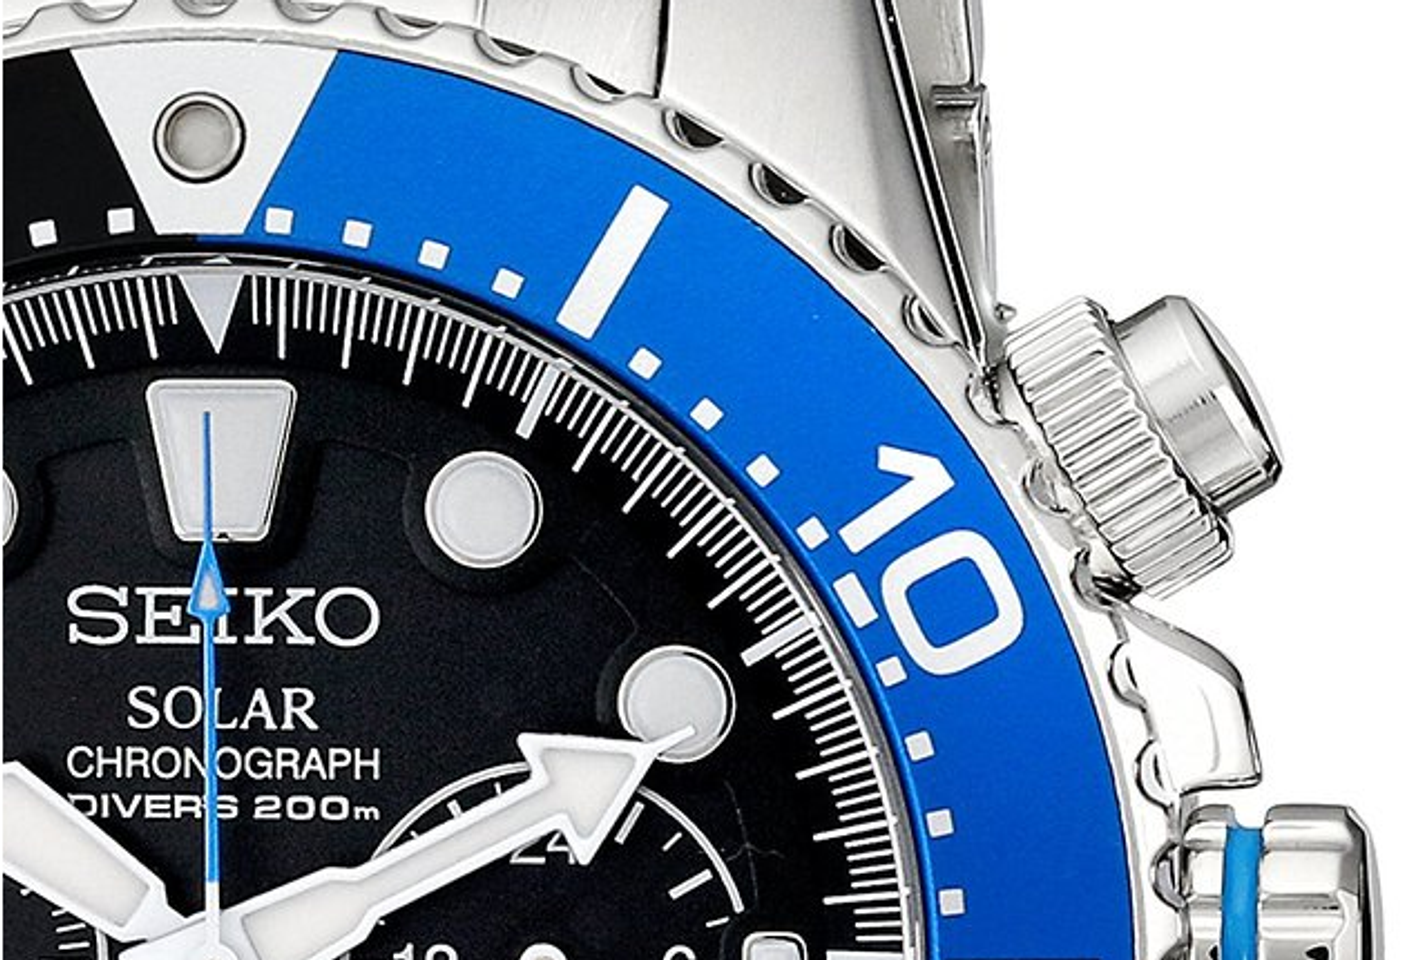 Đồng hồ Seiko Solar SSC017 thể hiện được đẳng cấp phái mạnh nhờ sắc đen của mặt đồng hồ cùng với thiết kế viền hình răng cưa đầy mạnh mẽ.